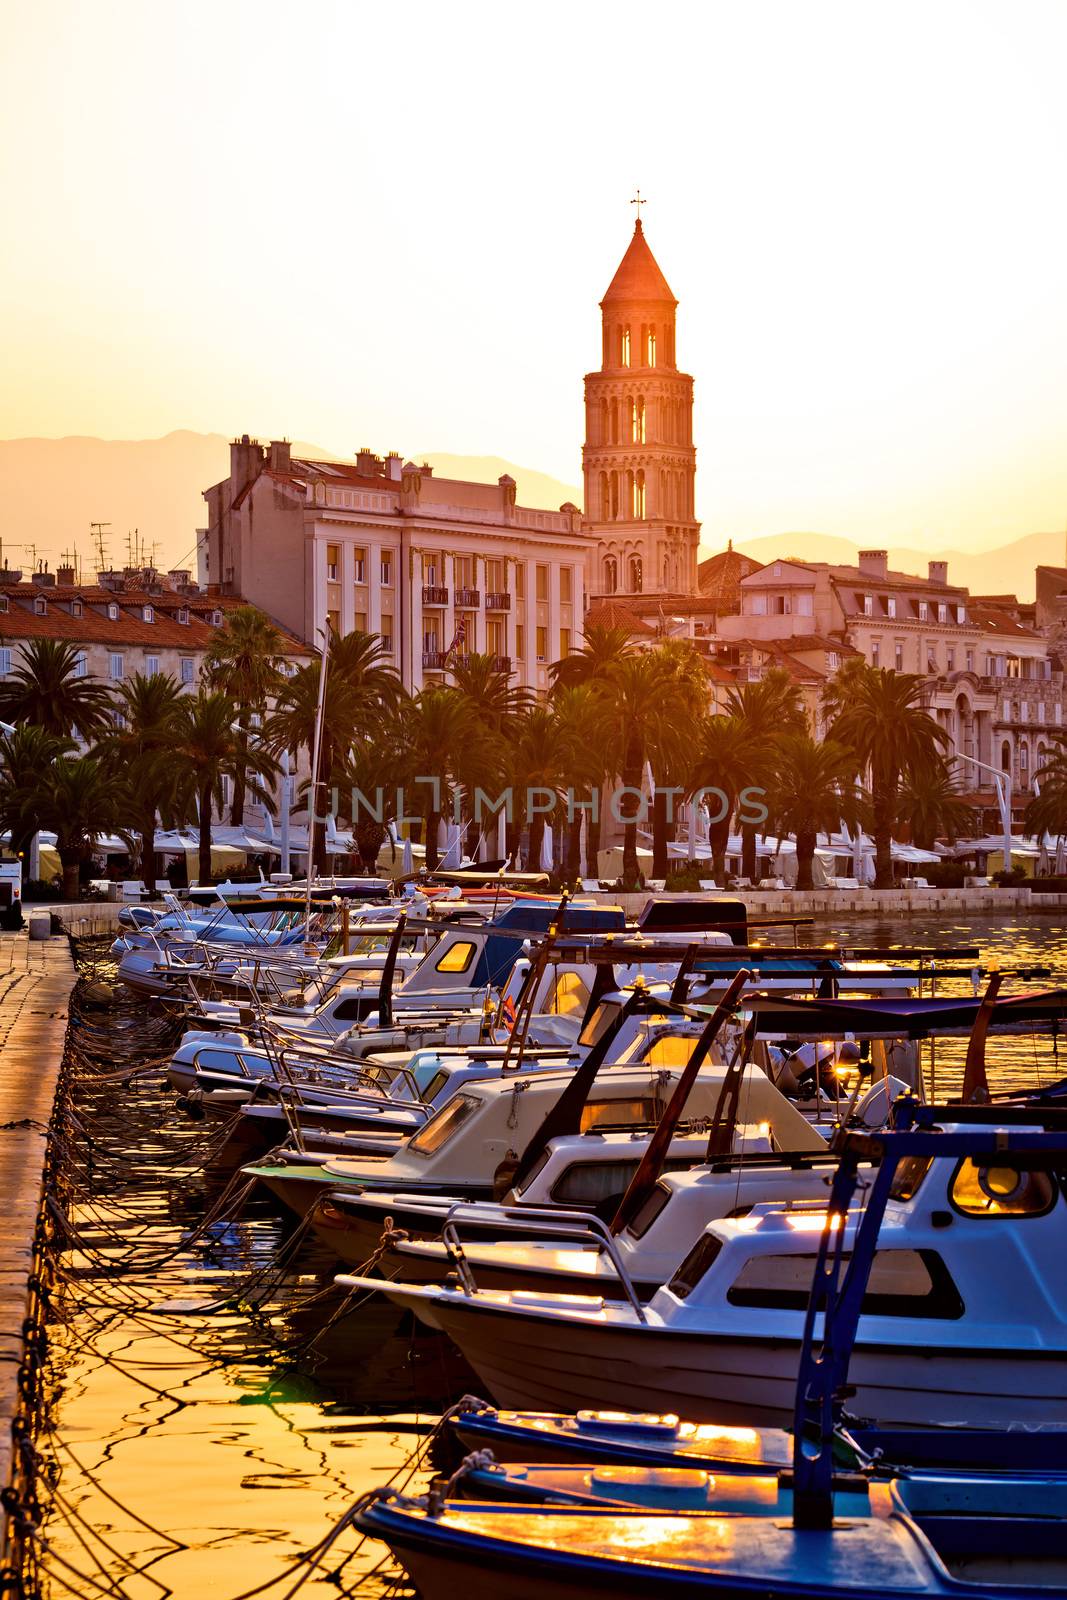 City of Split Riva at sunrise by xbrchx